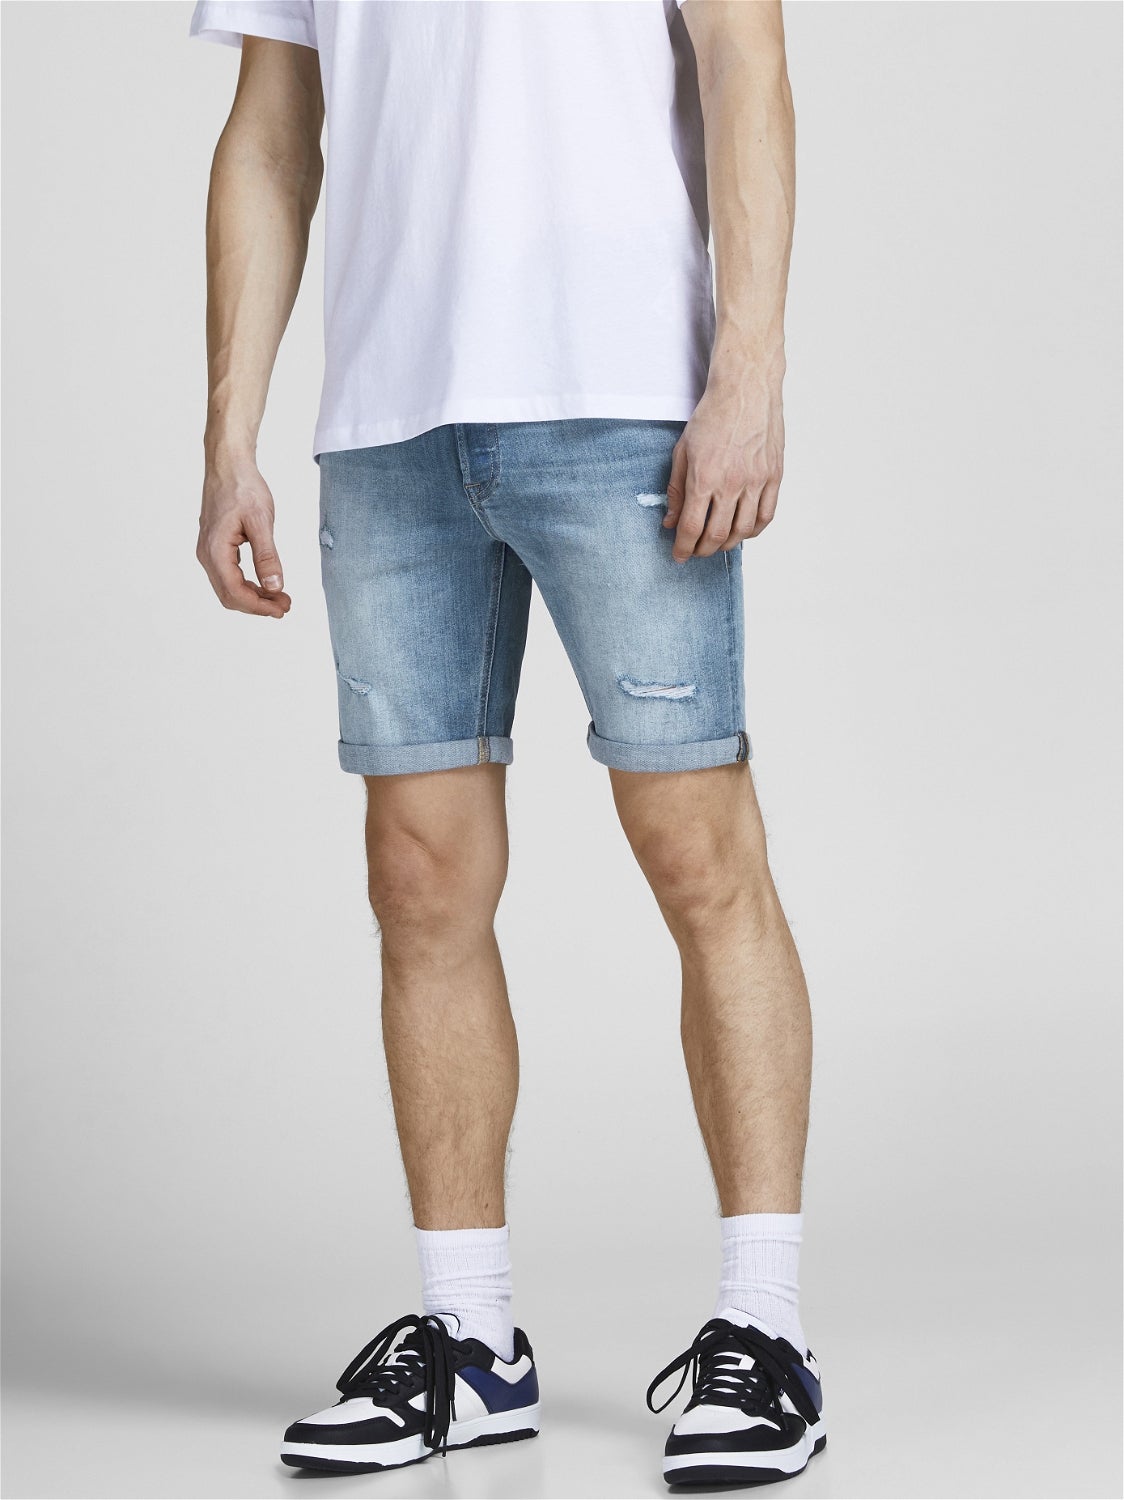 HERREN Jeans Elastisch Jack & Jones Shorts jeans Rot M Rabatt 57 % 